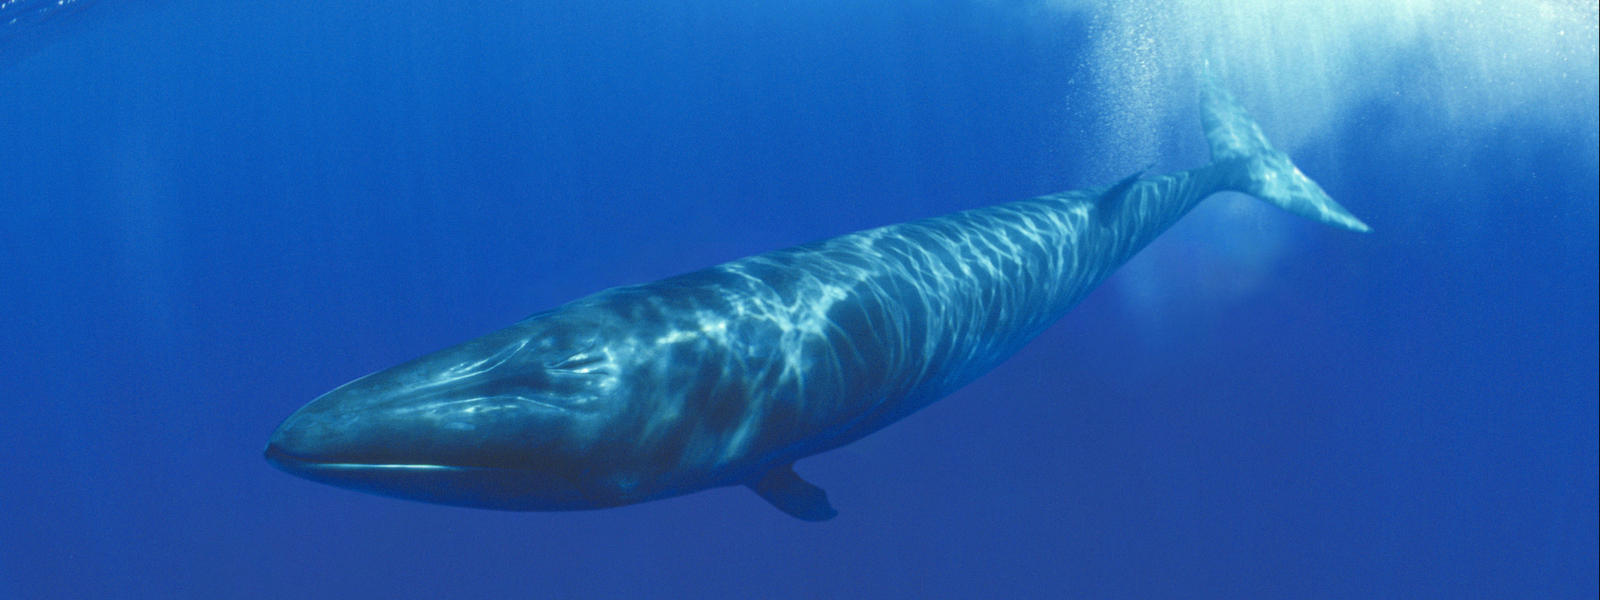 Whale #8